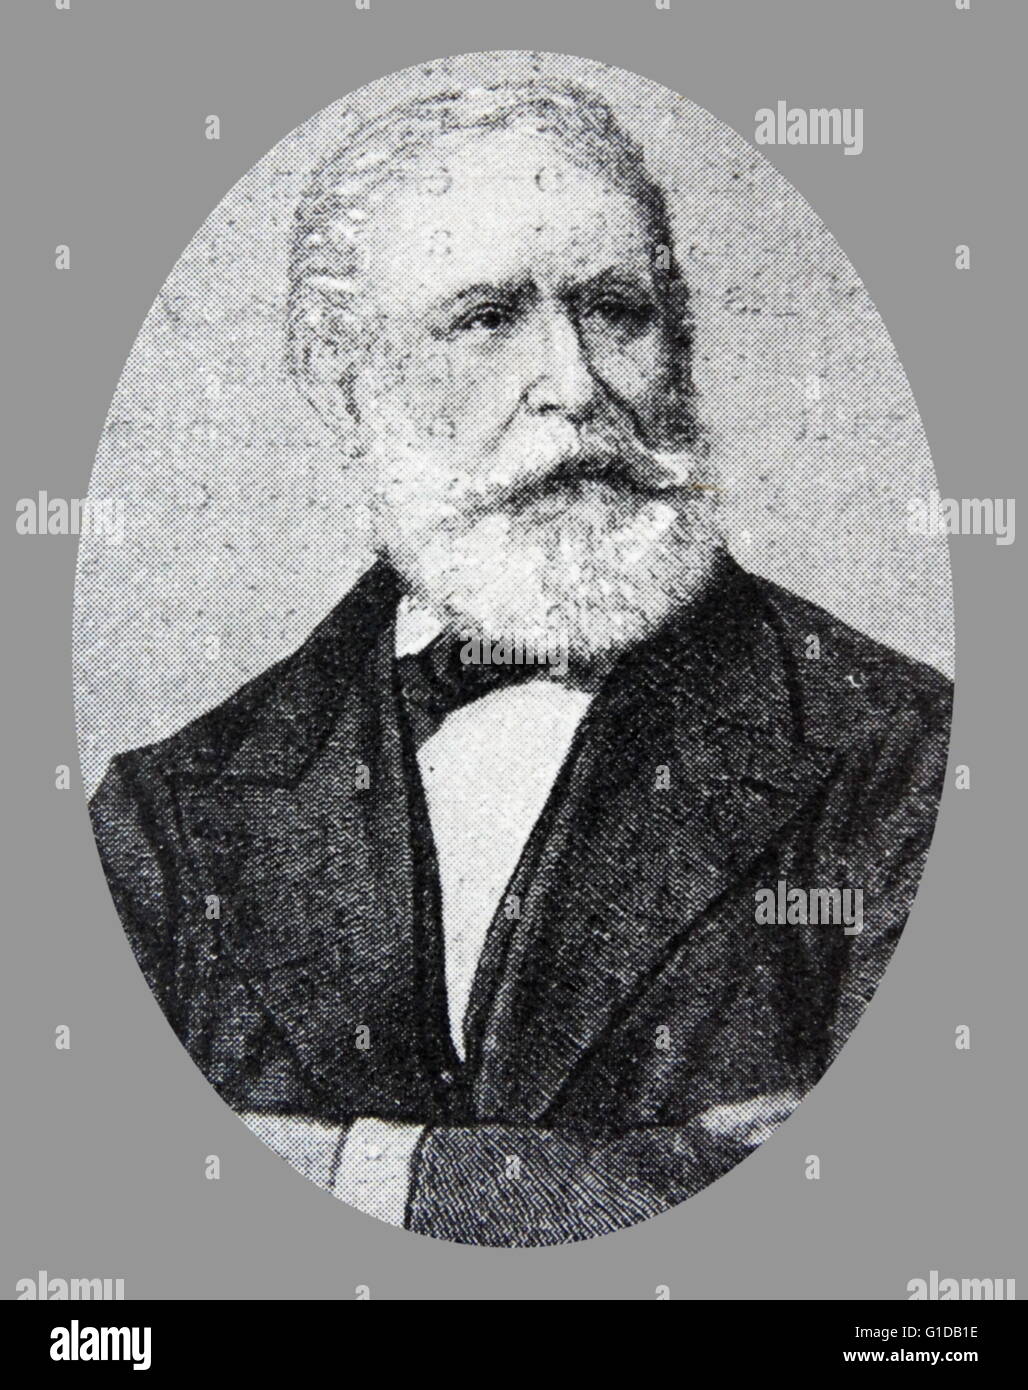 Kossuth im späteren Leben. Ein ungarischer Rechtsanwalt, Politiker und Gouverneur-Präsident des ungarischen Königreich während der Revolution von 1848-1849. Stockfoto